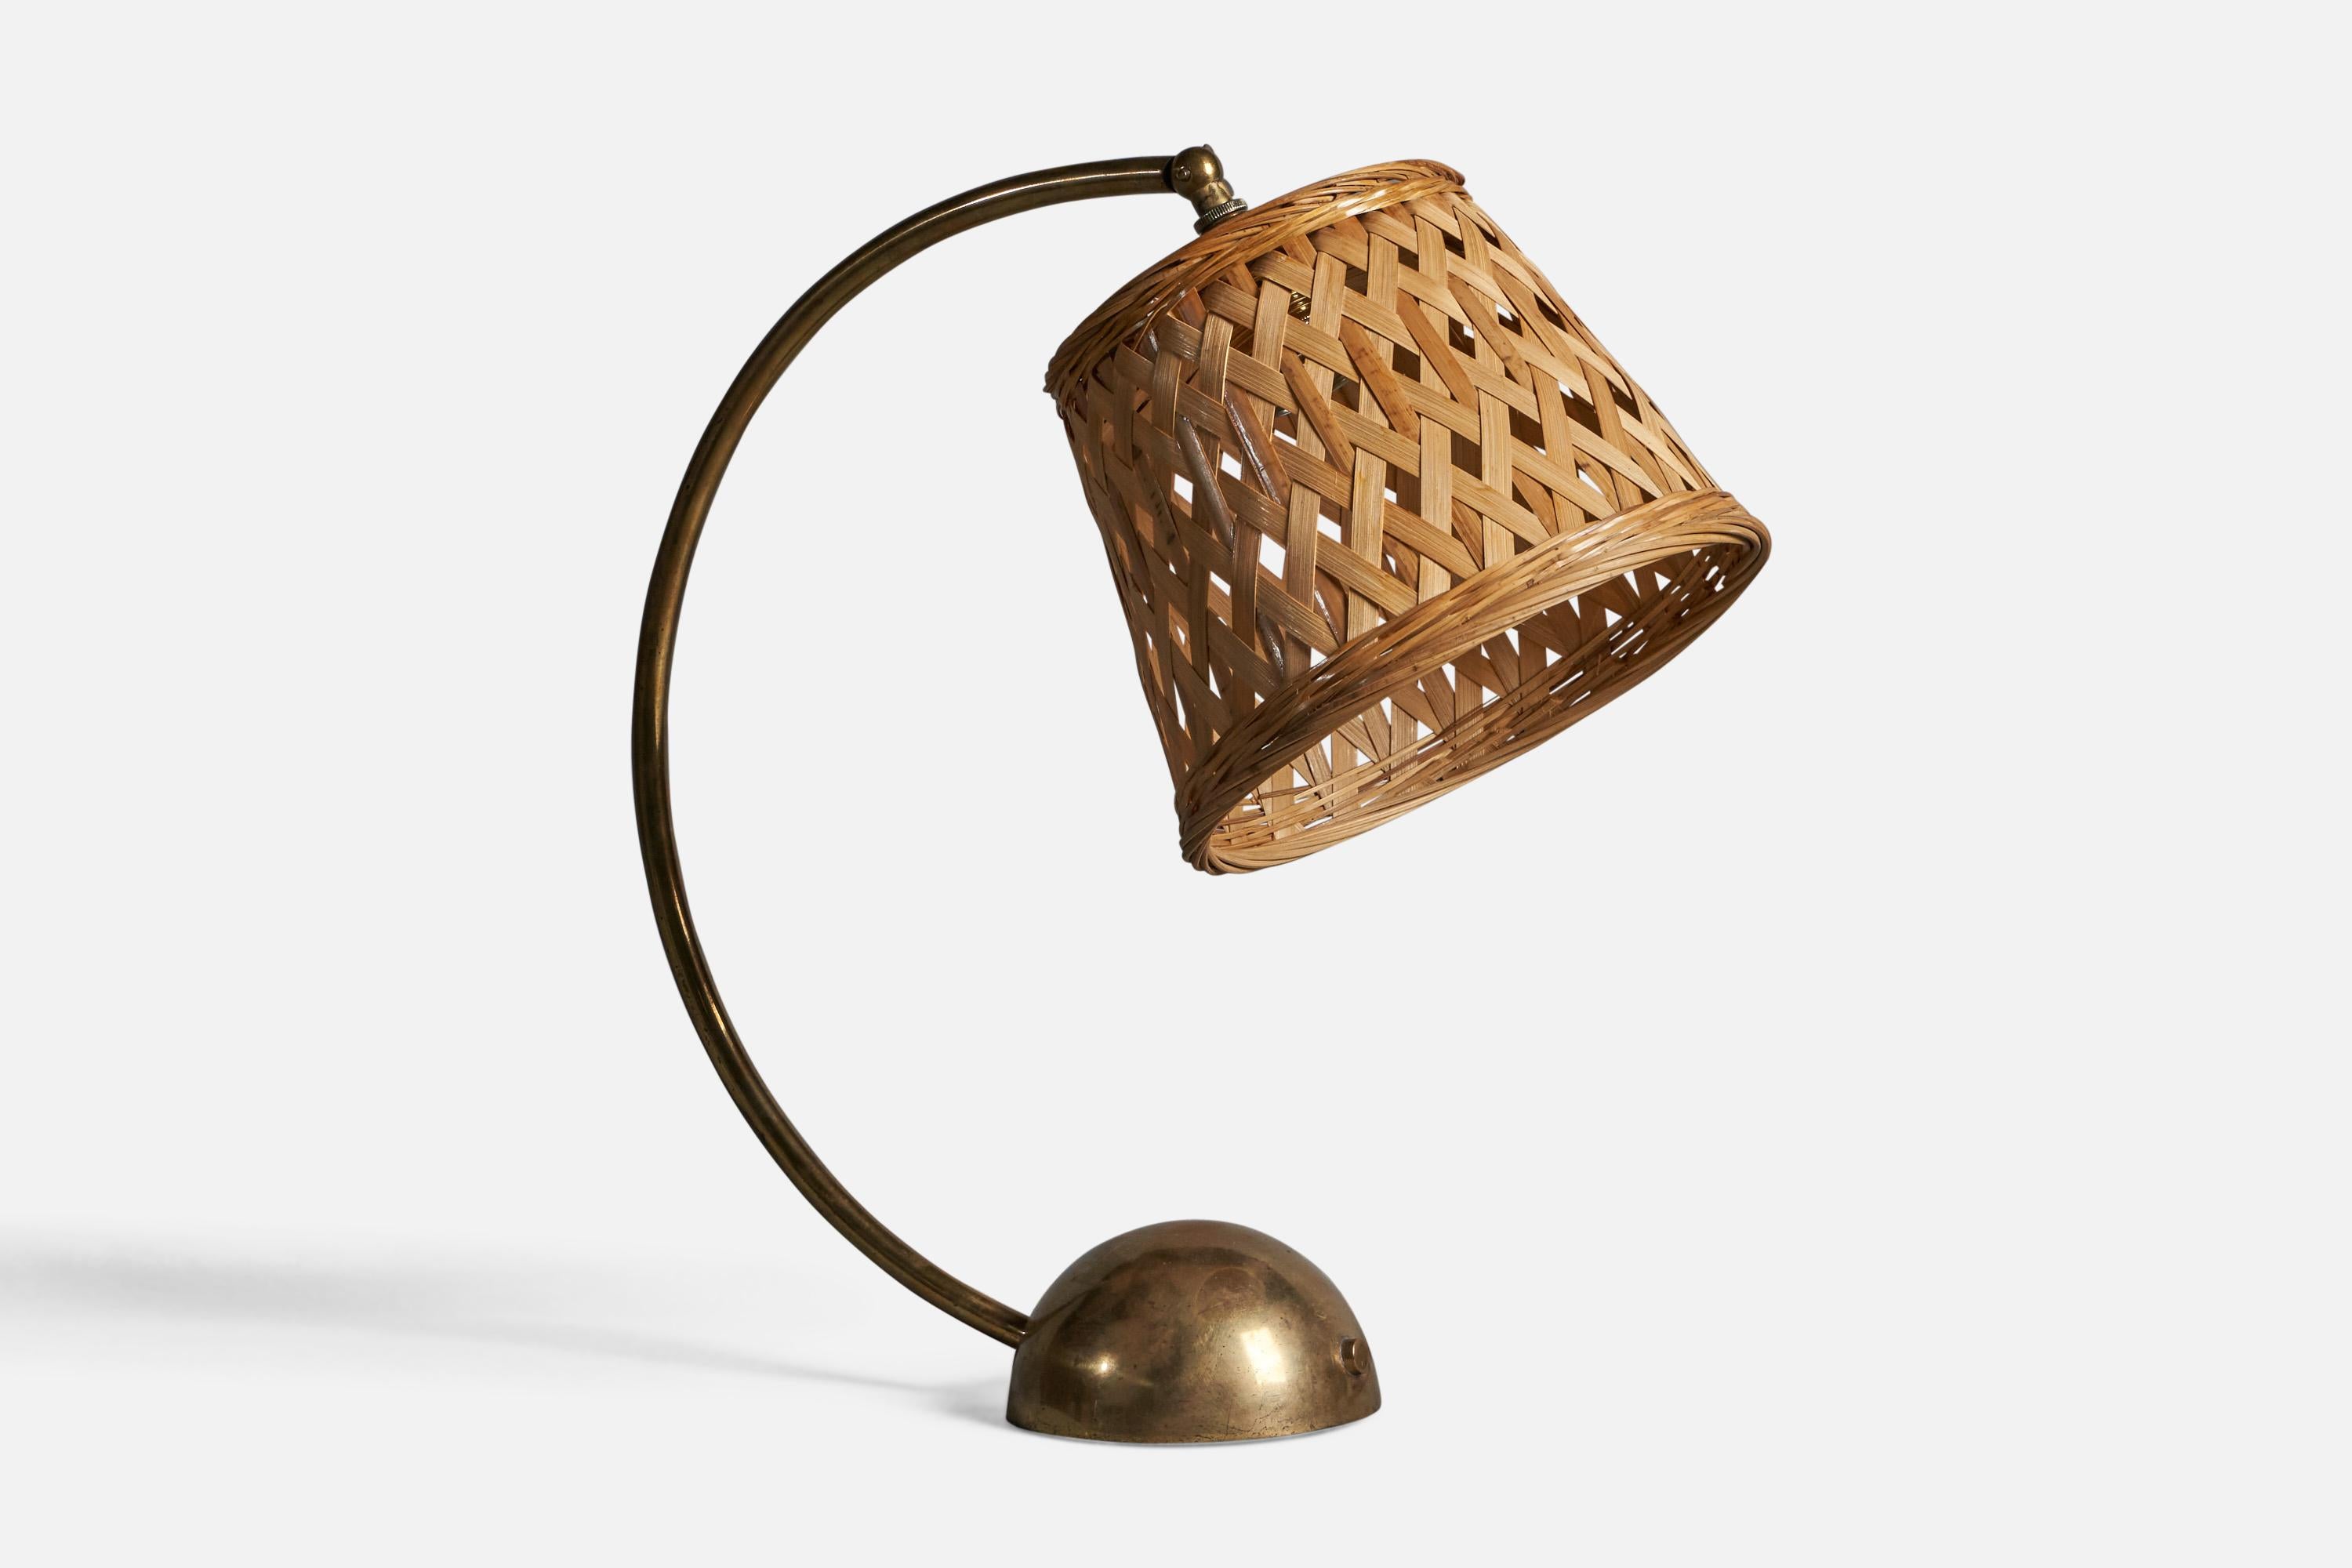 Lampe de table en laiton et rotin conçue par Pitt Müller, Allemagne, années 1950.

Dimensions globales (pouces) : 16